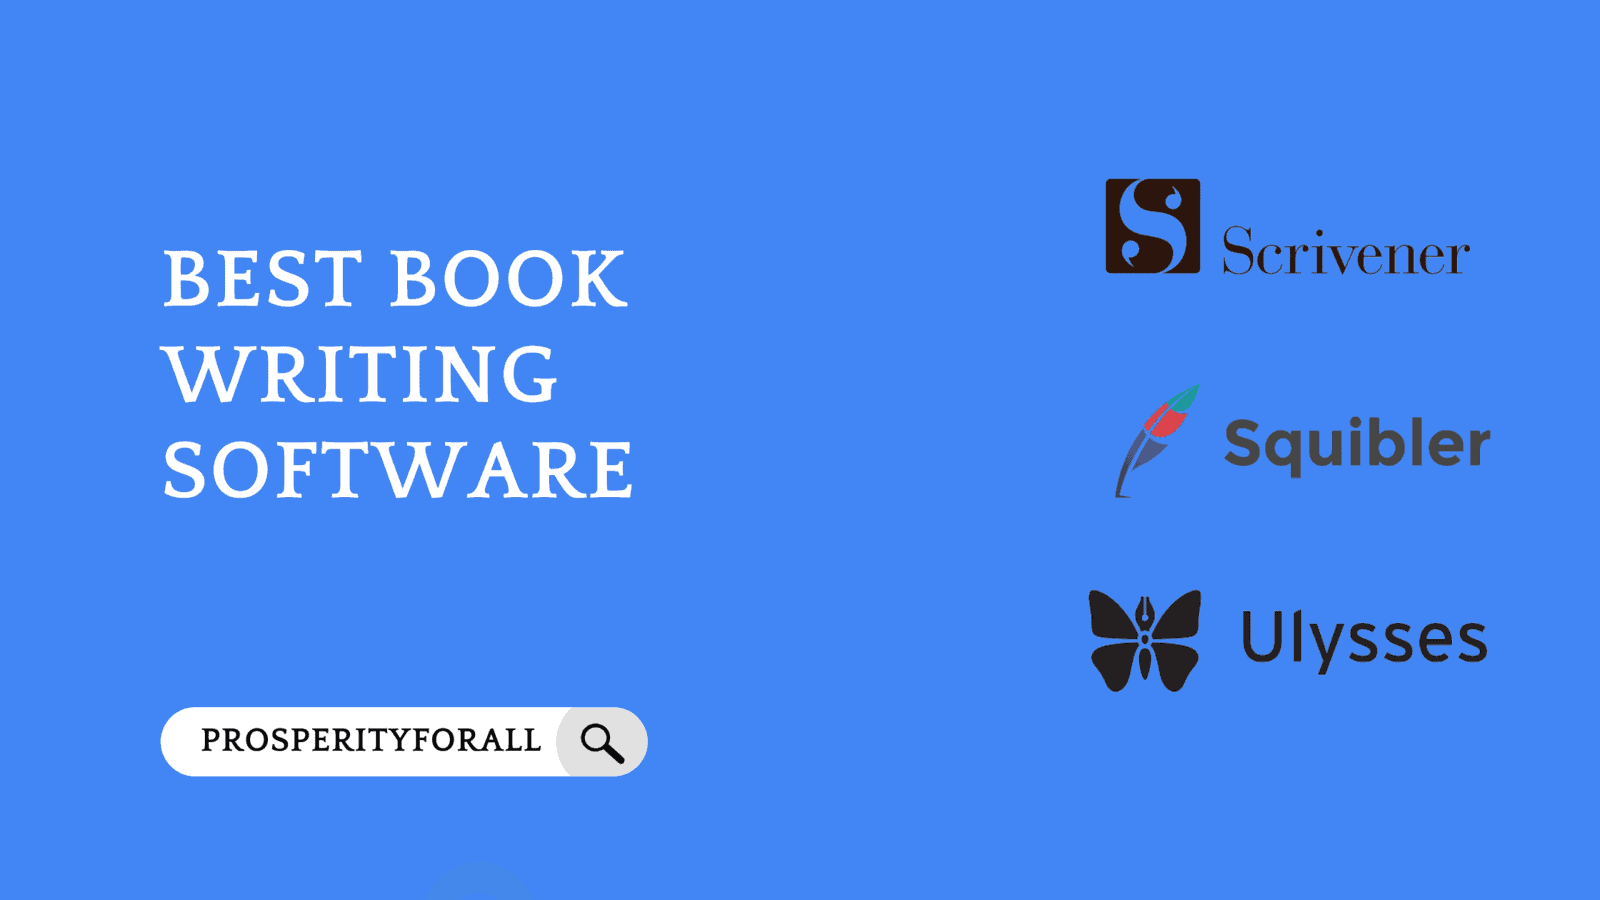 Best Book Writing Software - ProsperityForAll